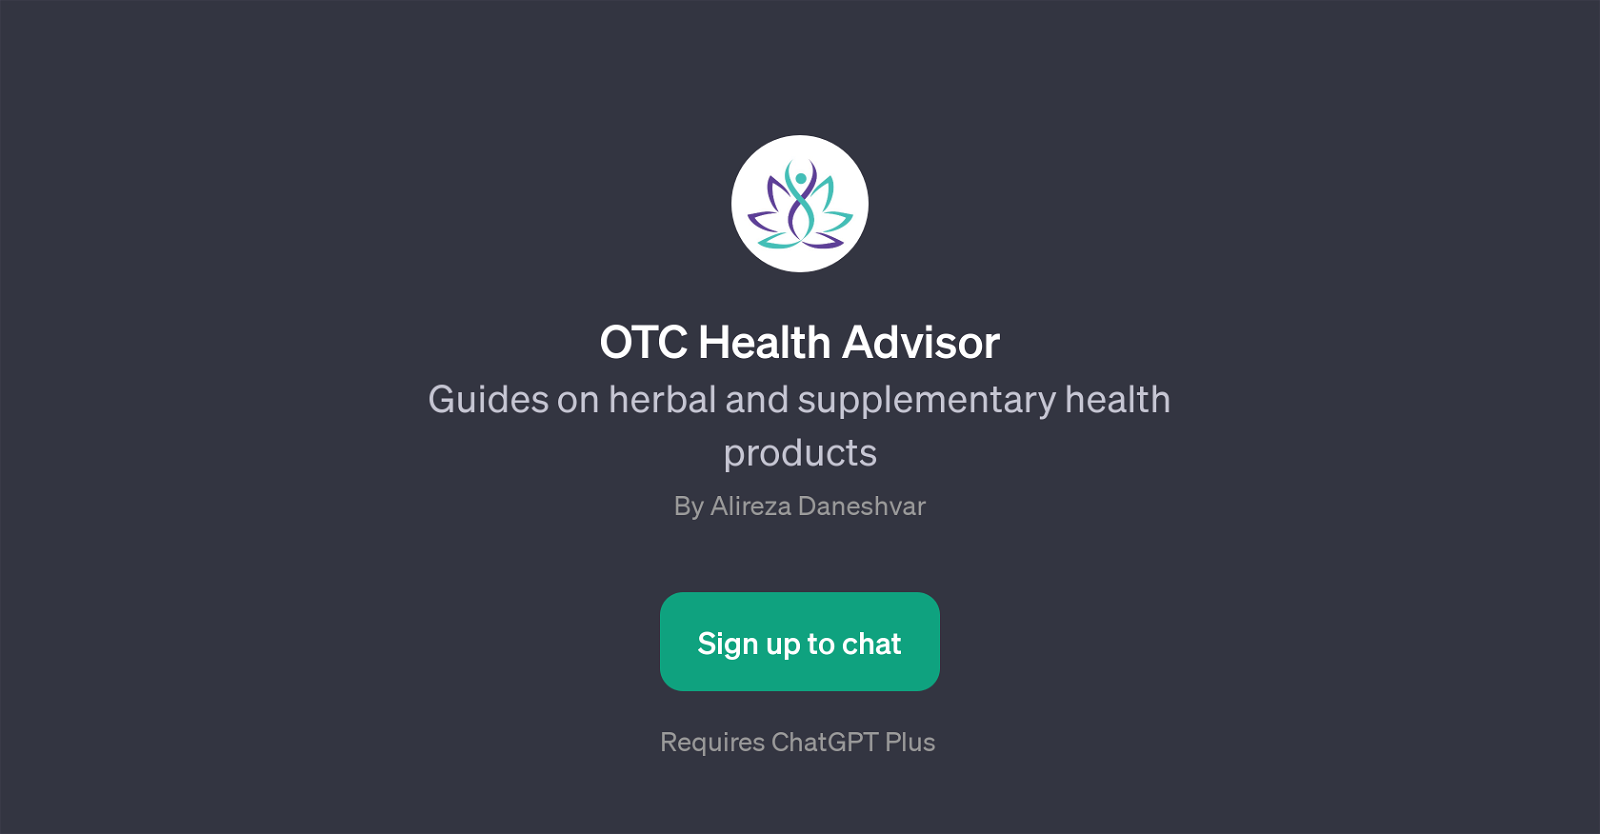 OTC Health Advisor website